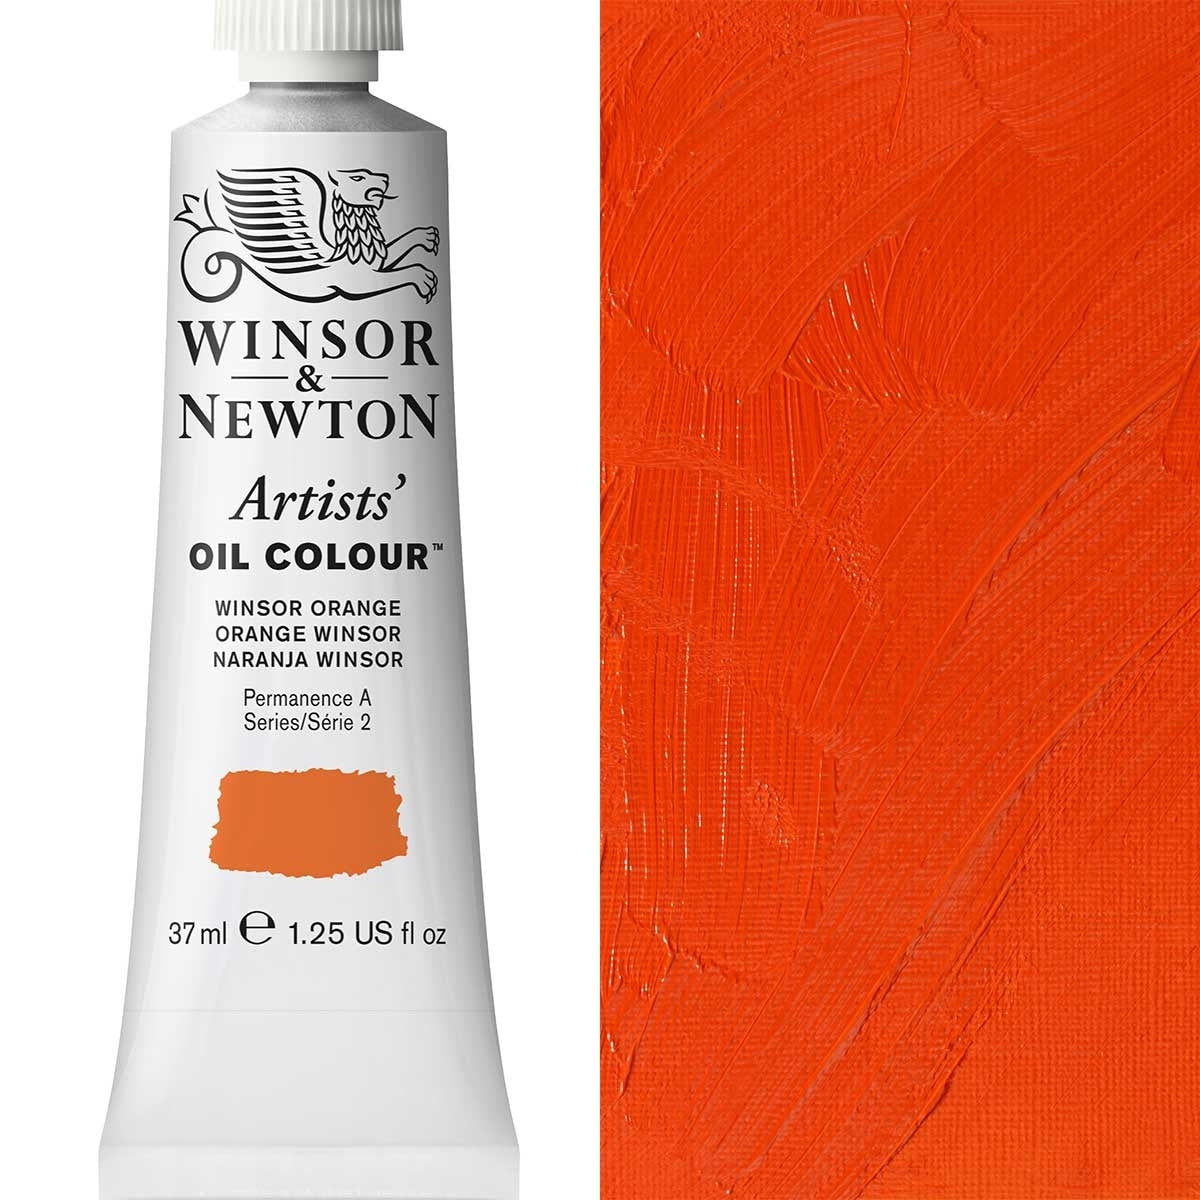 Winsor and Newton - Artists 'Oil Color - 37ml - Winsor Orange